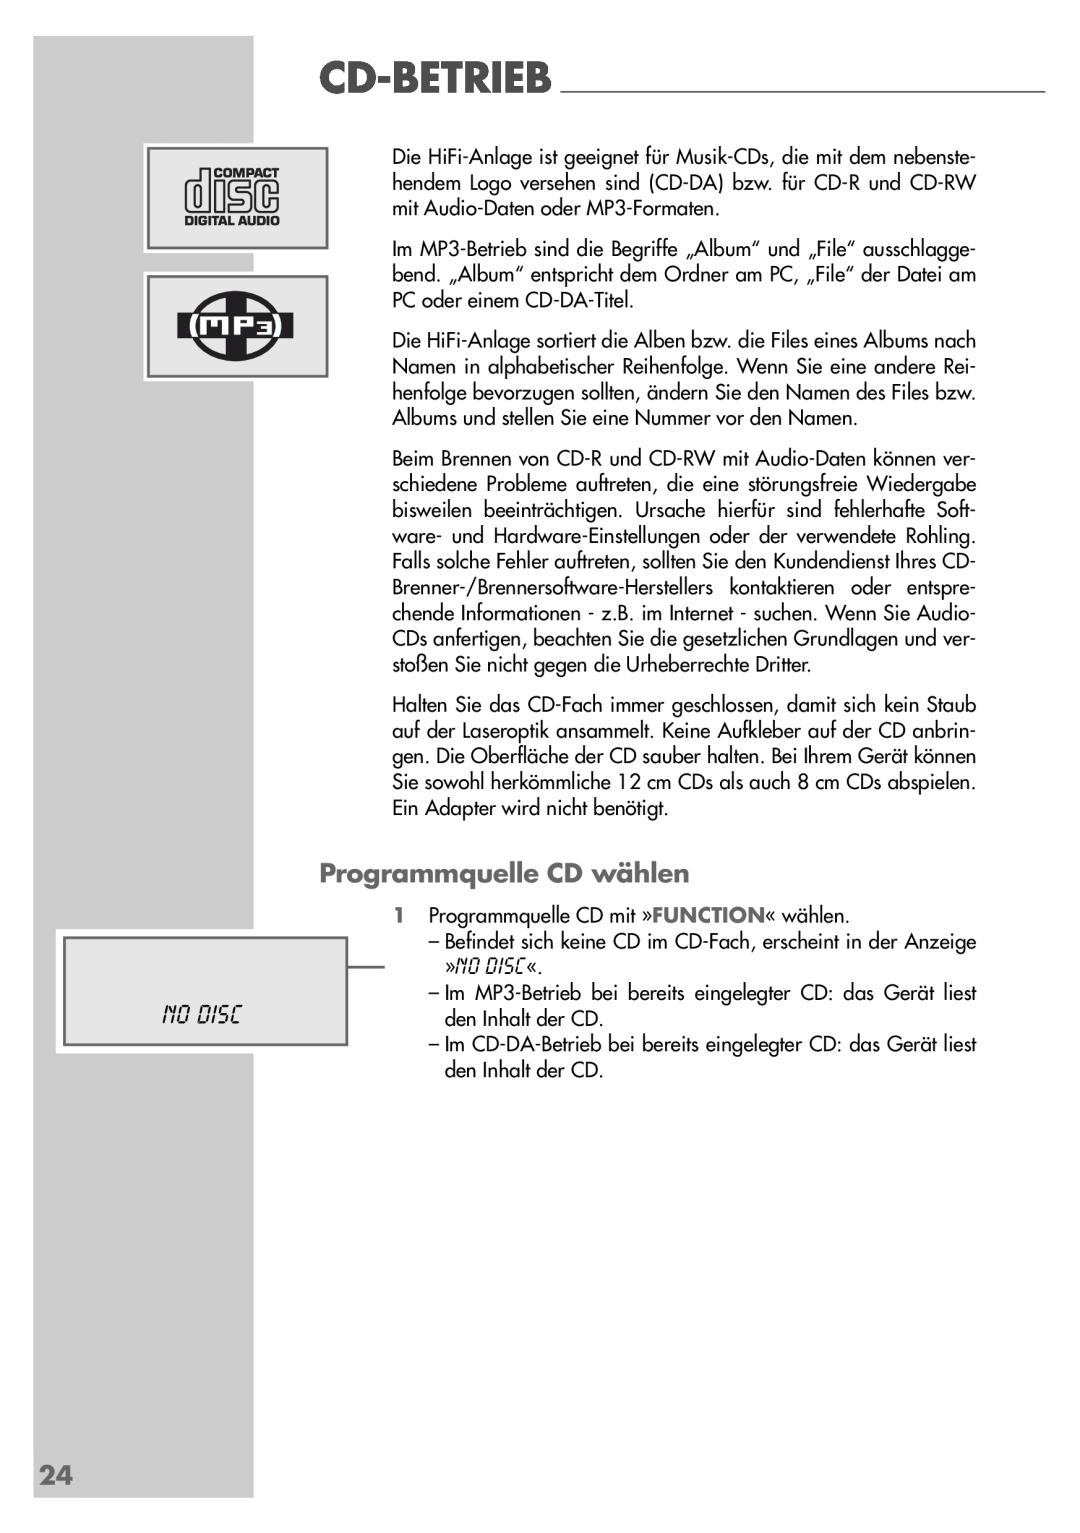 Grundig UMS 5400 DEC manual Programmquelle CD wählen, No Disc 